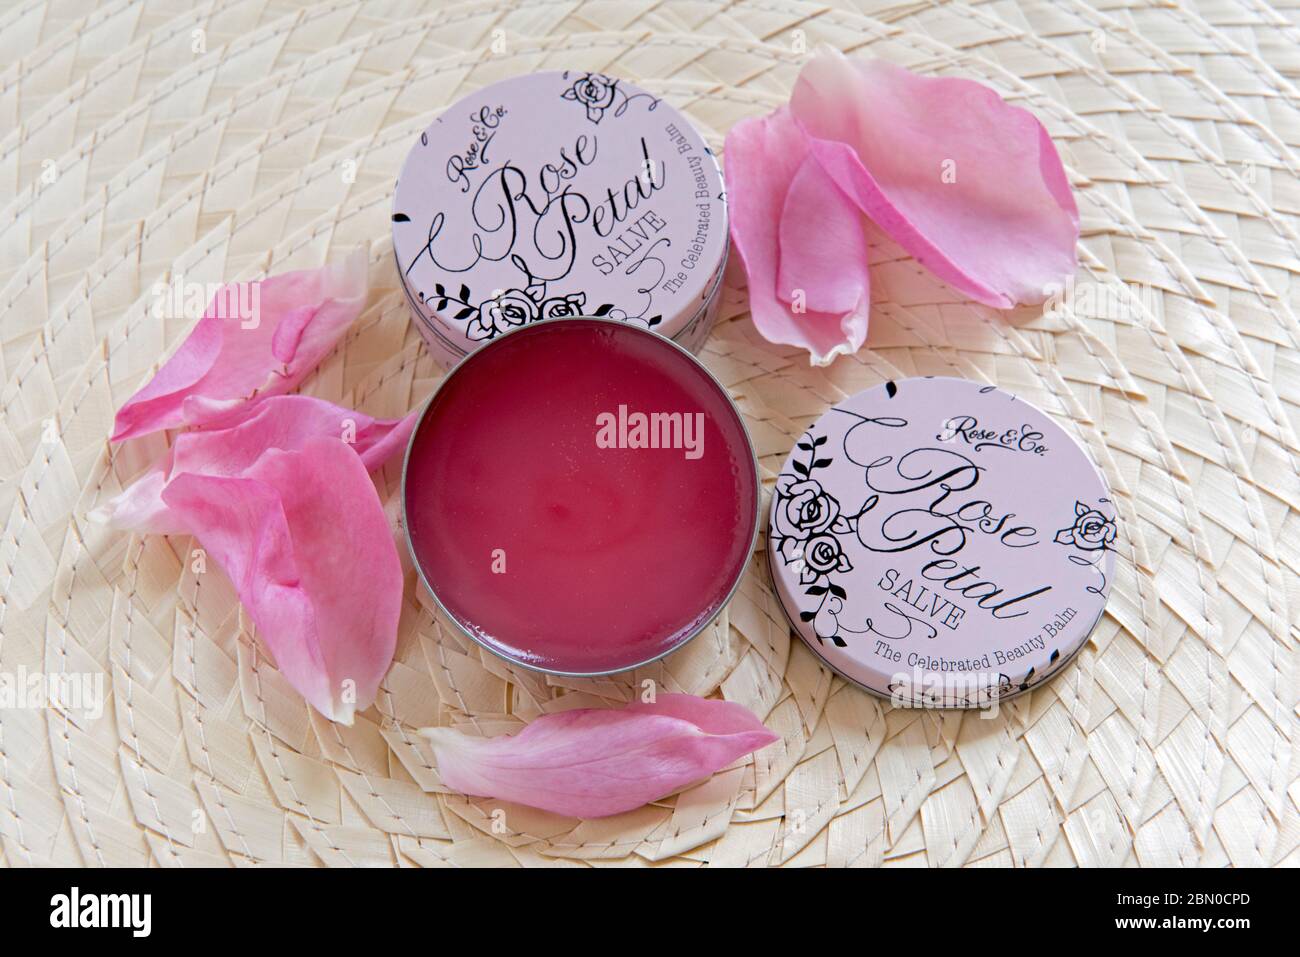 Labbro di petalo di rosa Salve o balsamo in tini rotondi rosa di stagno con petali di rosa come decorazione su sfondo foglia di palma. Cosmetici senza rifiuti. Foto Stock